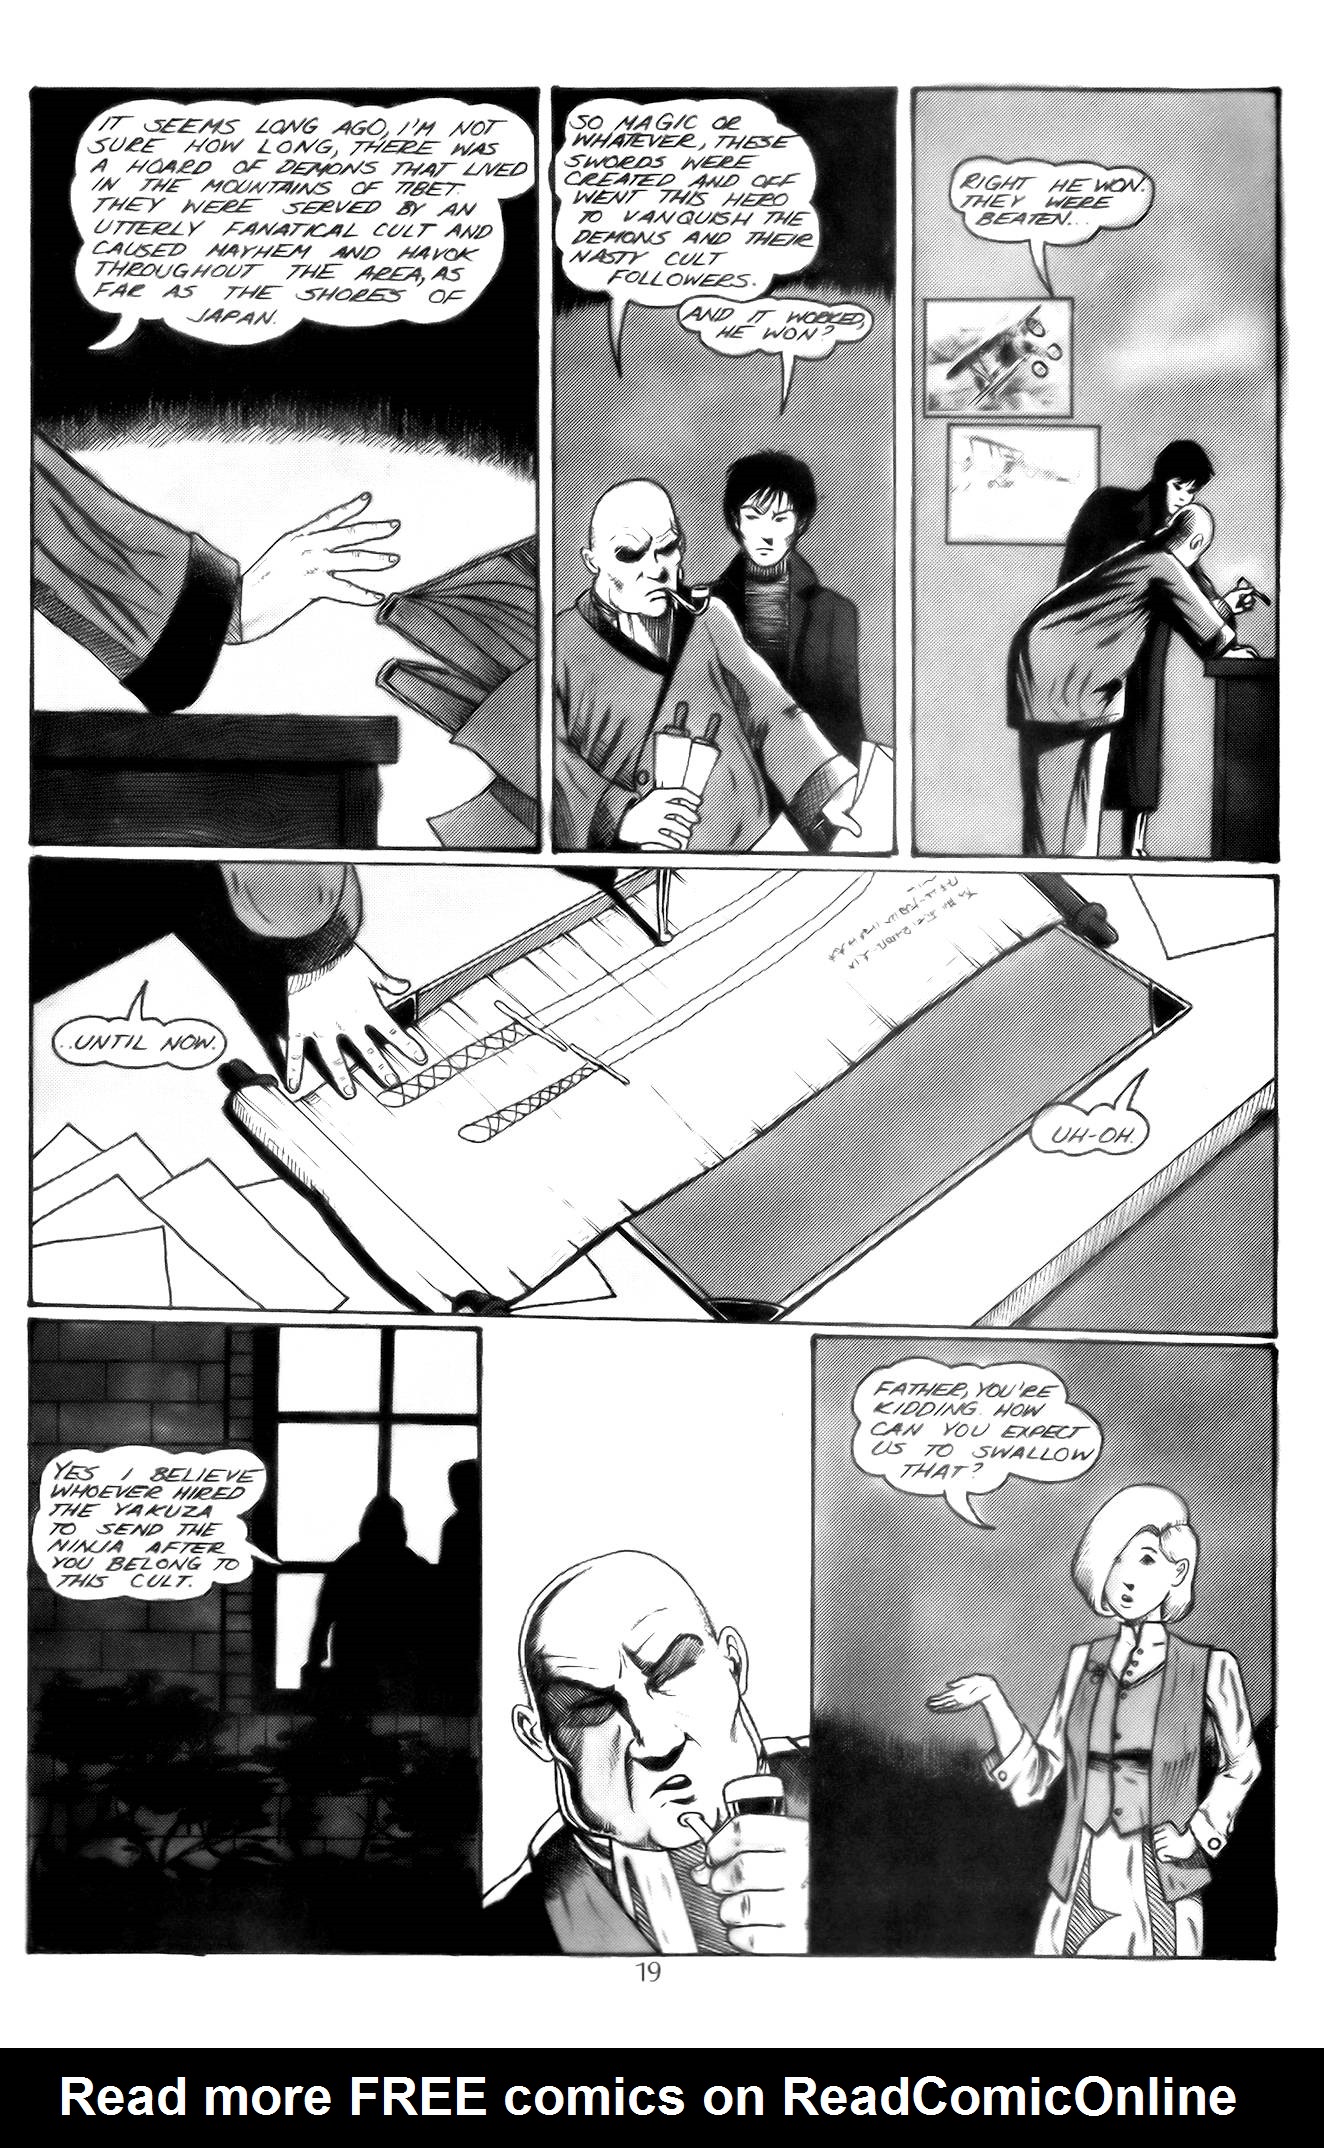 Read online Samurai comic -  Issue #4 - 21